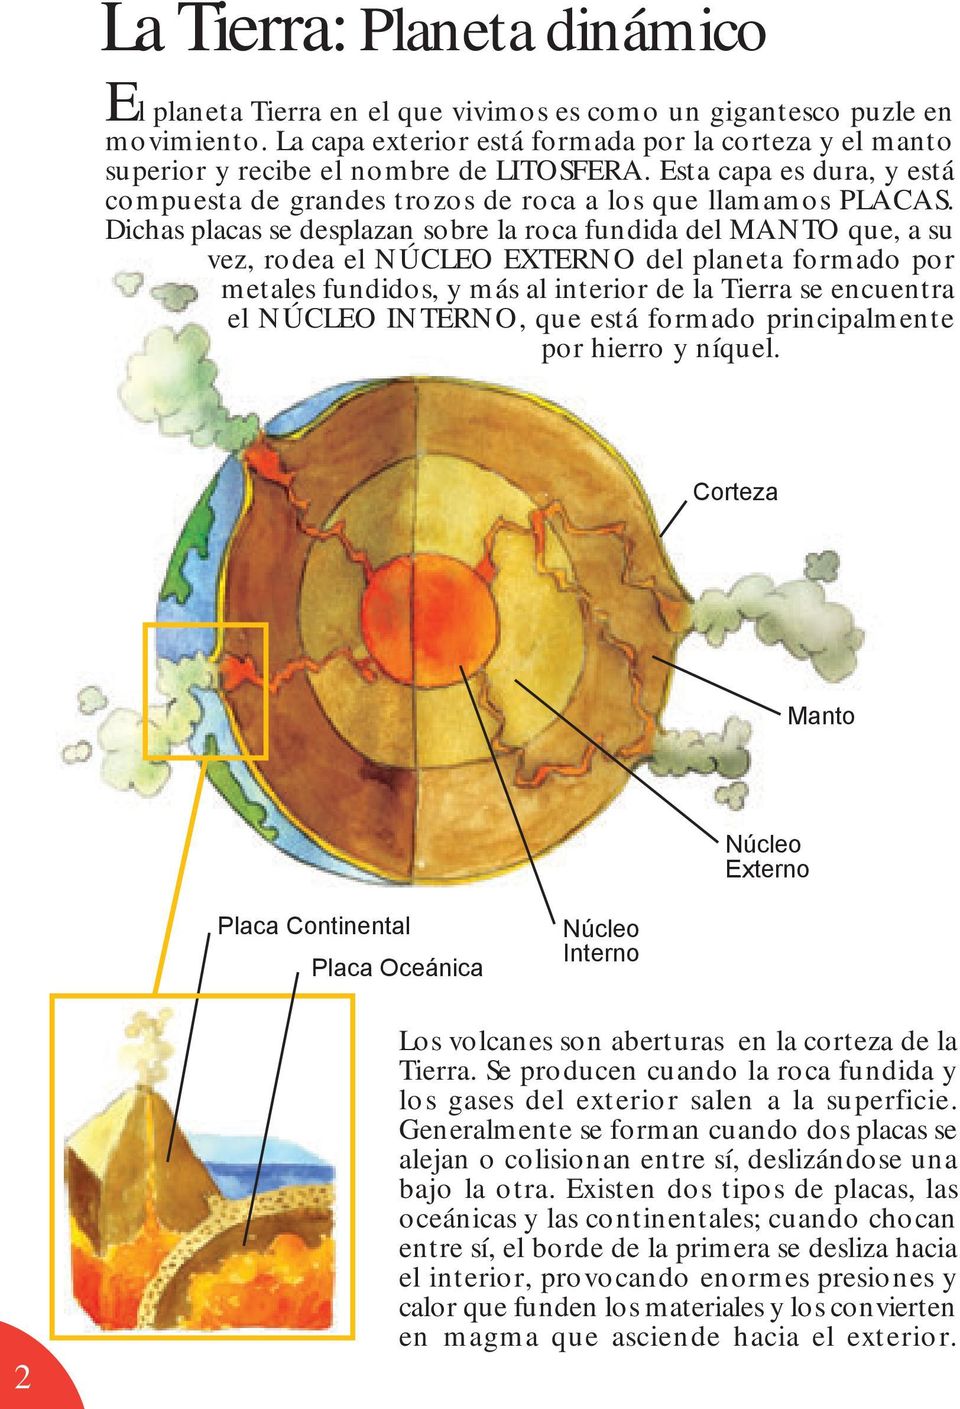 Dichas placas se desplazan sobre la roca fundida del MANTO que, a su vez, rodea el NÚCLEO EXTERNO del planeta formado por metales fundidos, y más al interior de la Tierra se encuentra el NÚCLEO